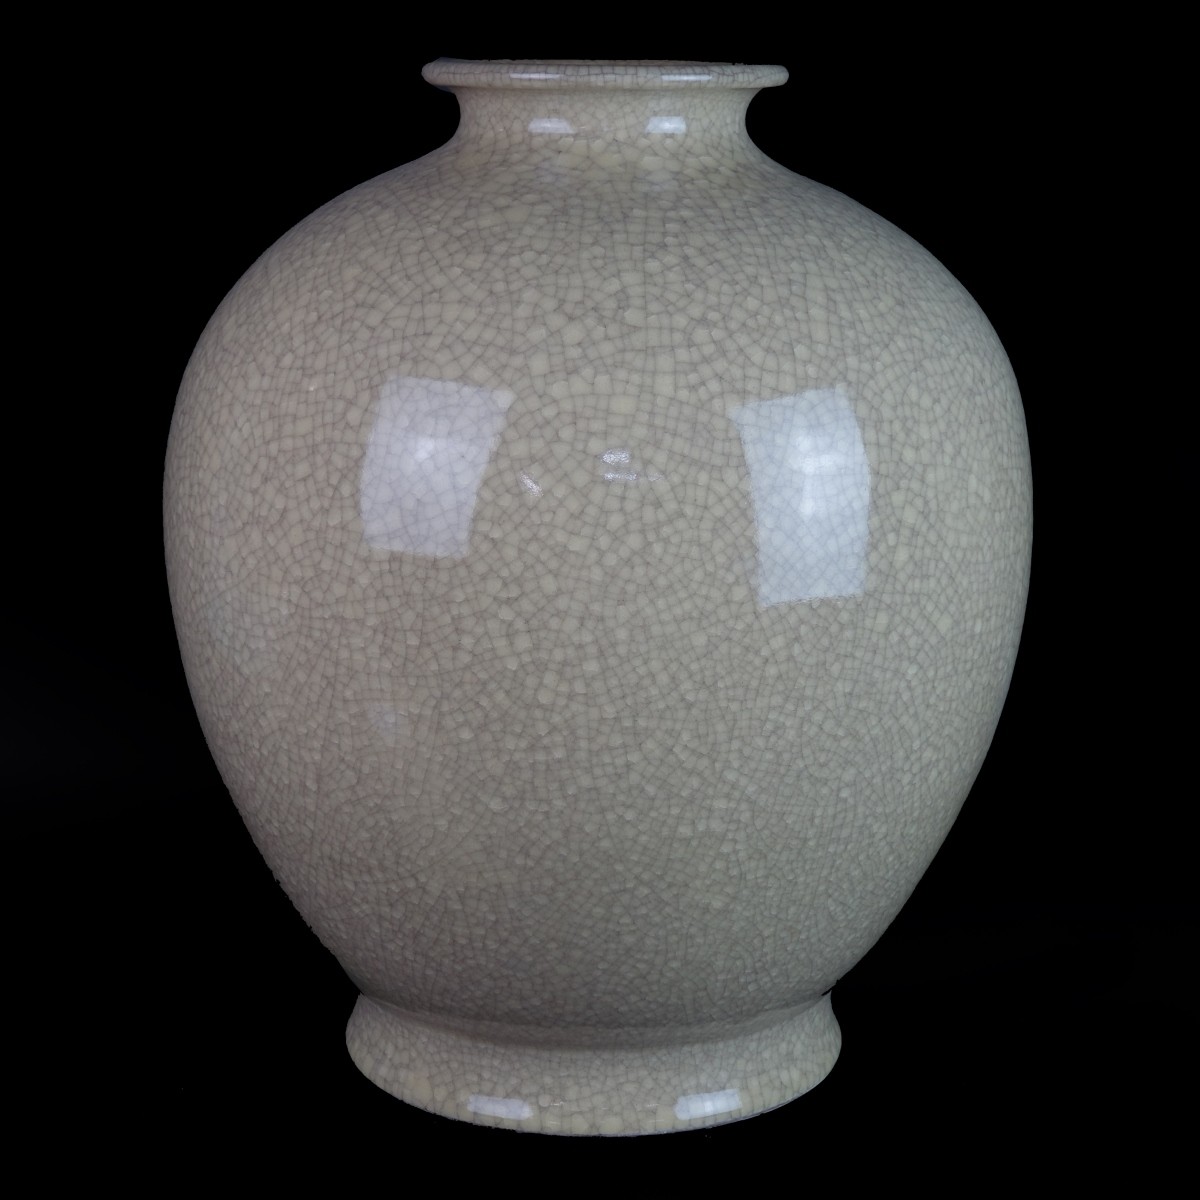 Chinese Style Vase